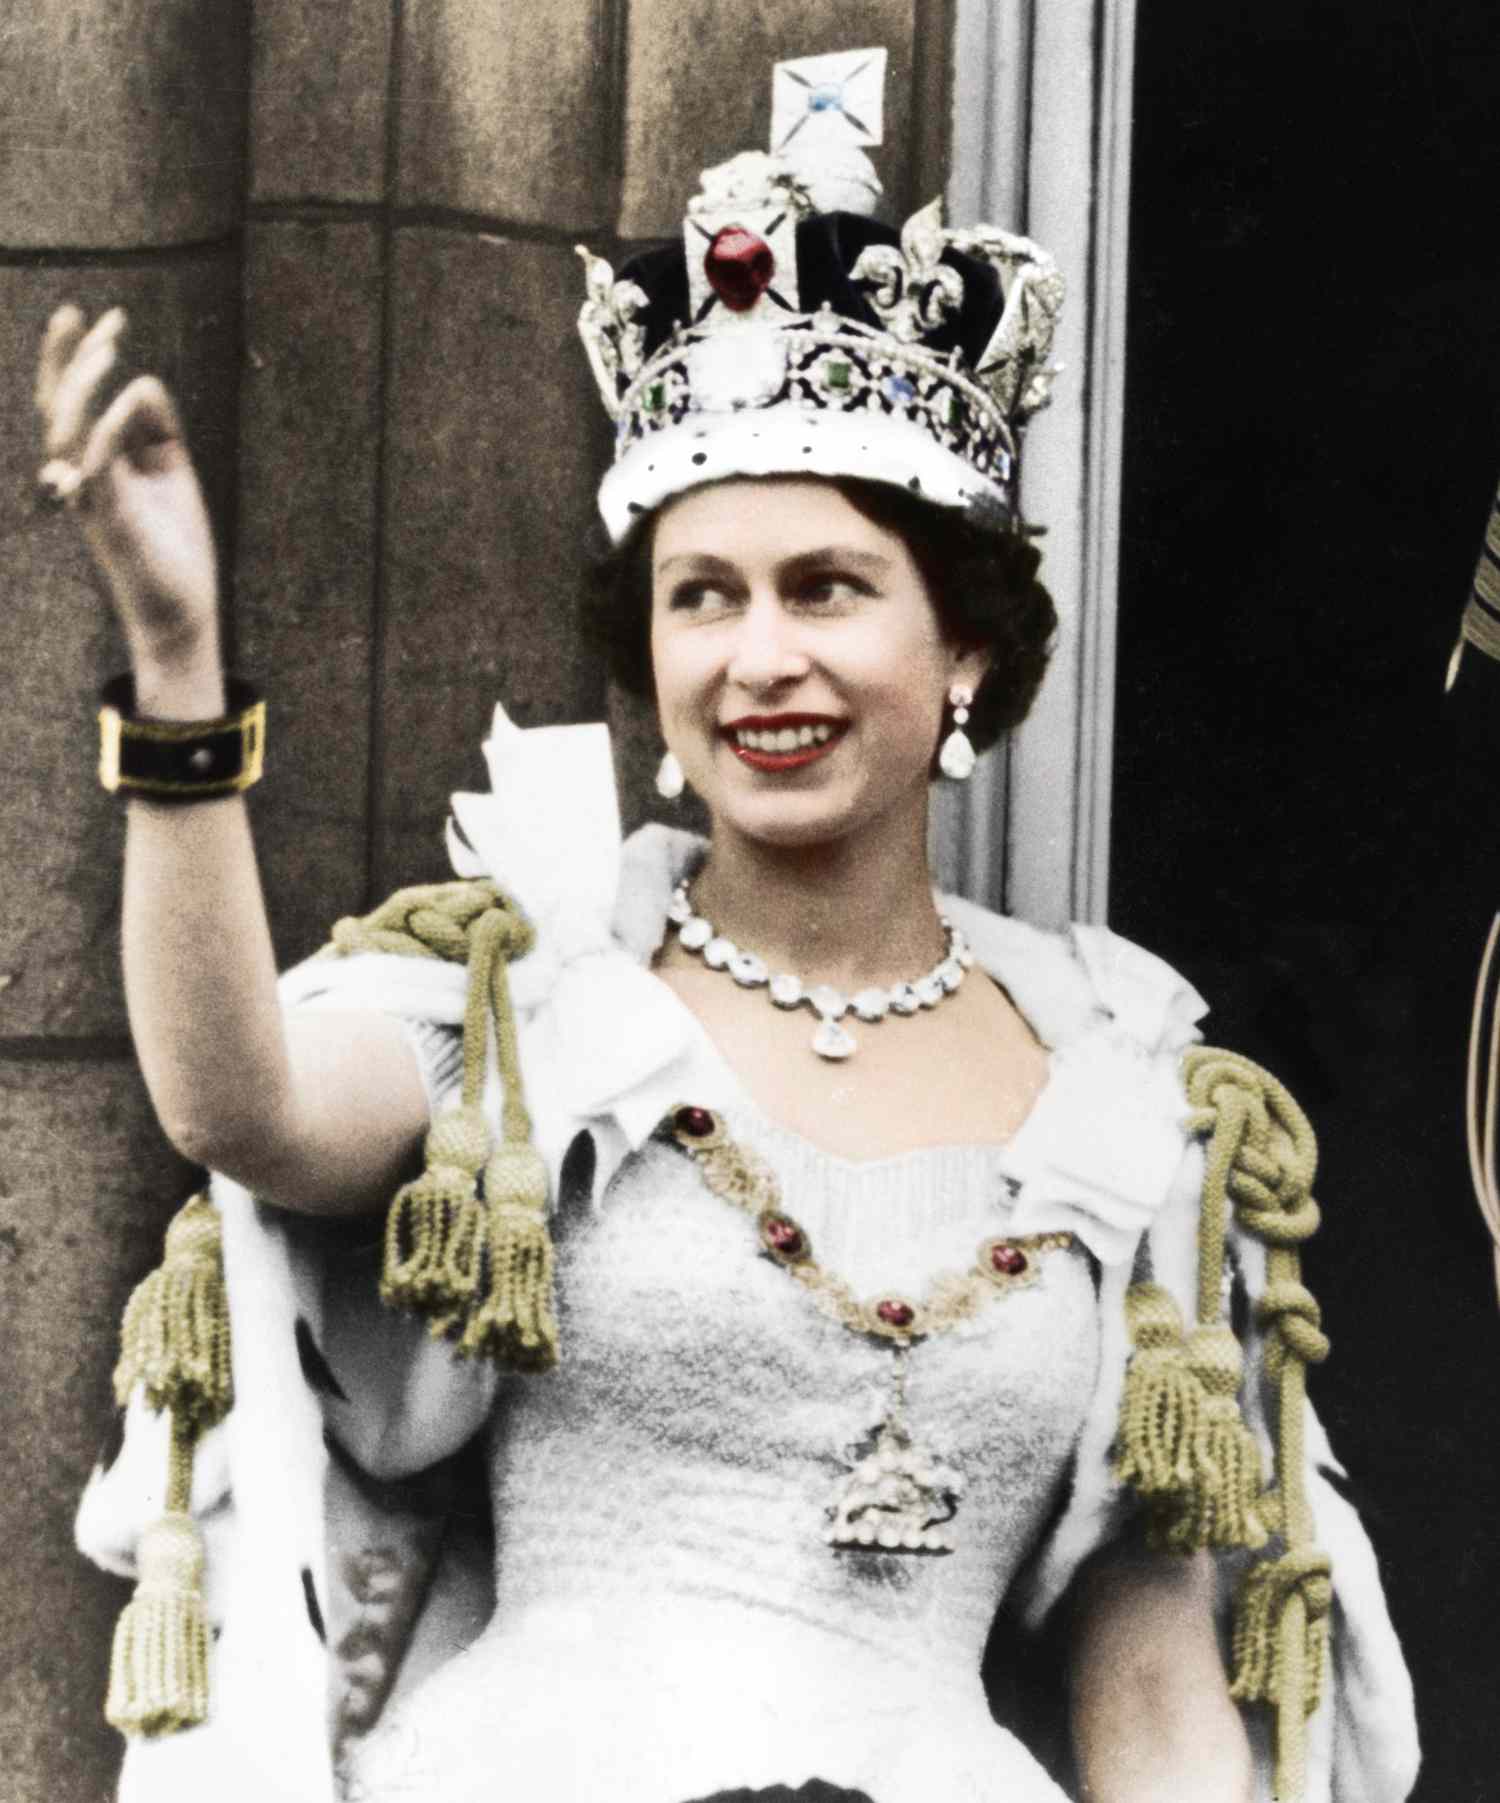 Queen Elizabeth II On Their Coronation Day